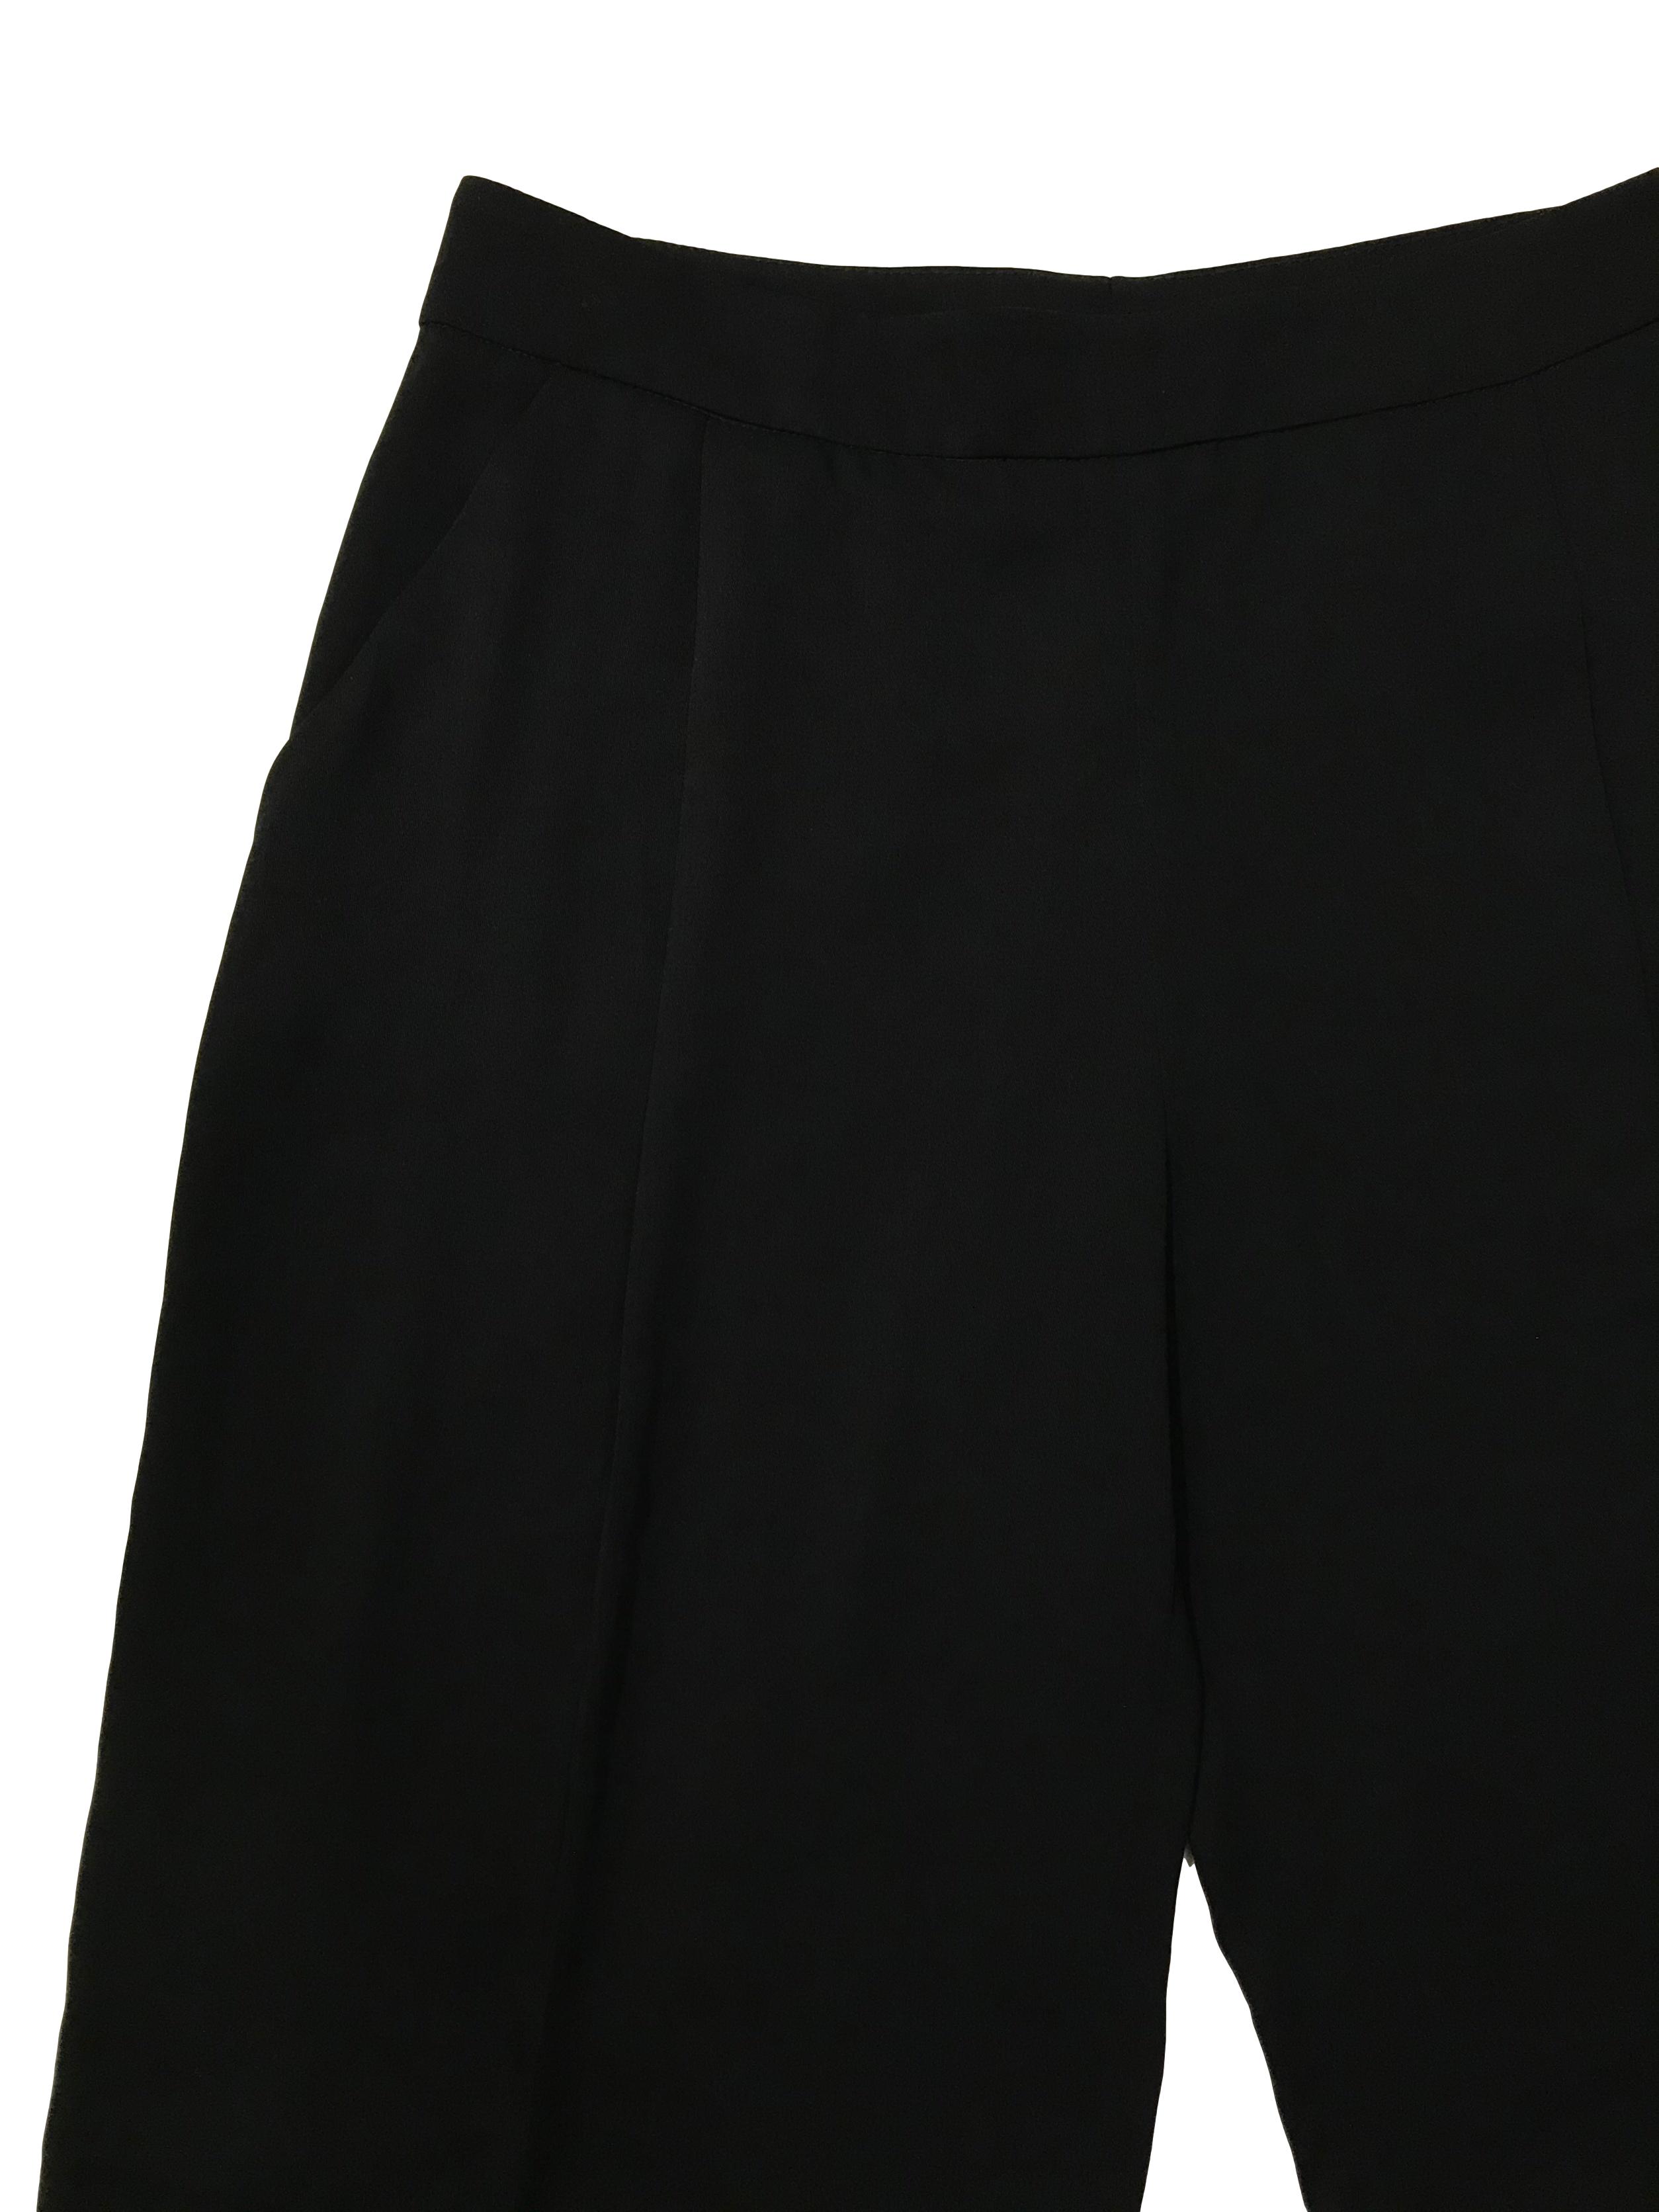 Bermuda Zara fluida negra con pliegues delanteros y bolsillos laterales, corte recto con cierre al lado . Cintura 80cm Largo 58cm. Precio original S/ 139